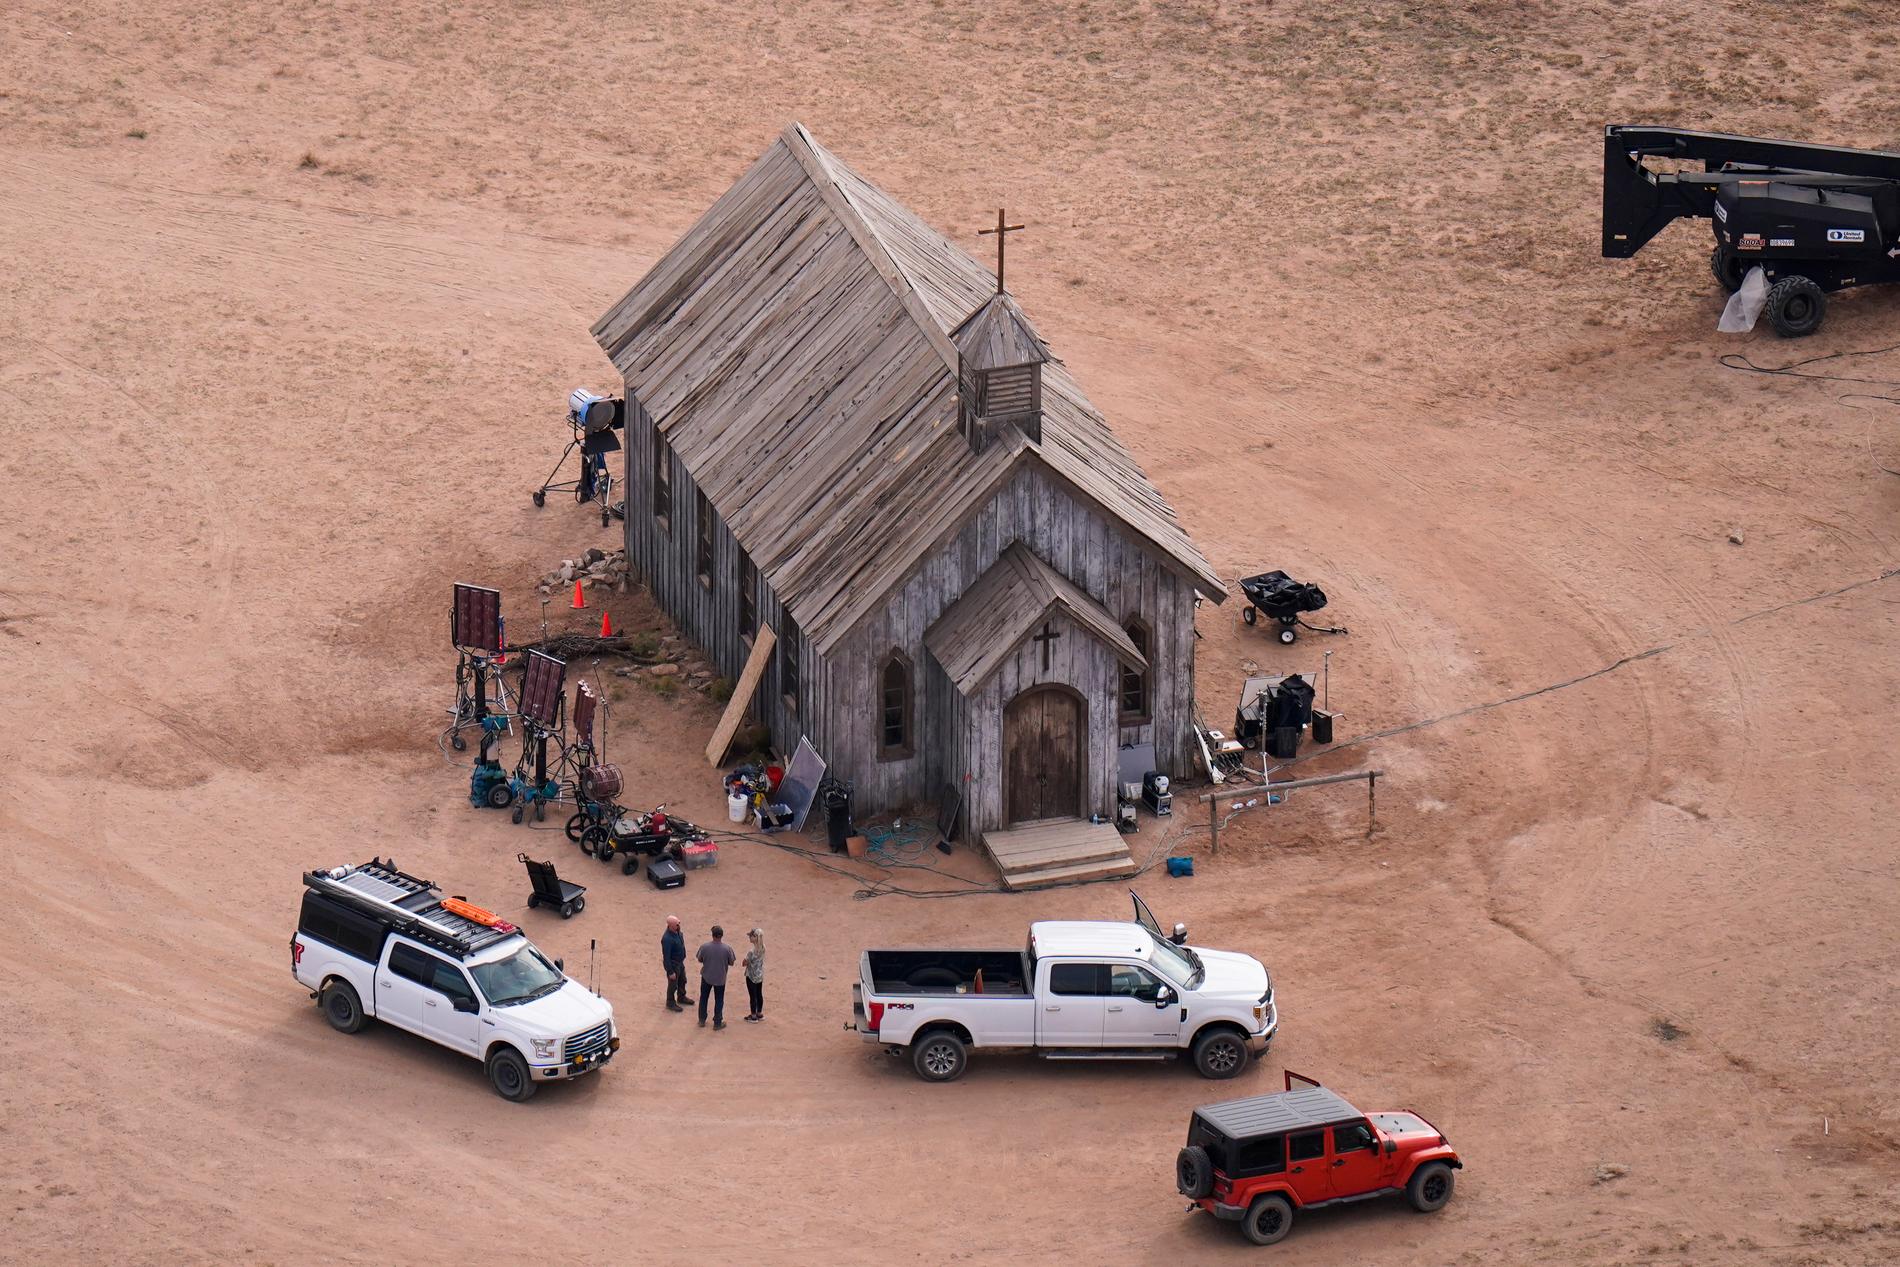 Bonanza Creek Ranch i Santa Fe, New Mexico där dödskjutningen på inspelningen av filmen "Rust" ägde rum 2021. Arkivbild.